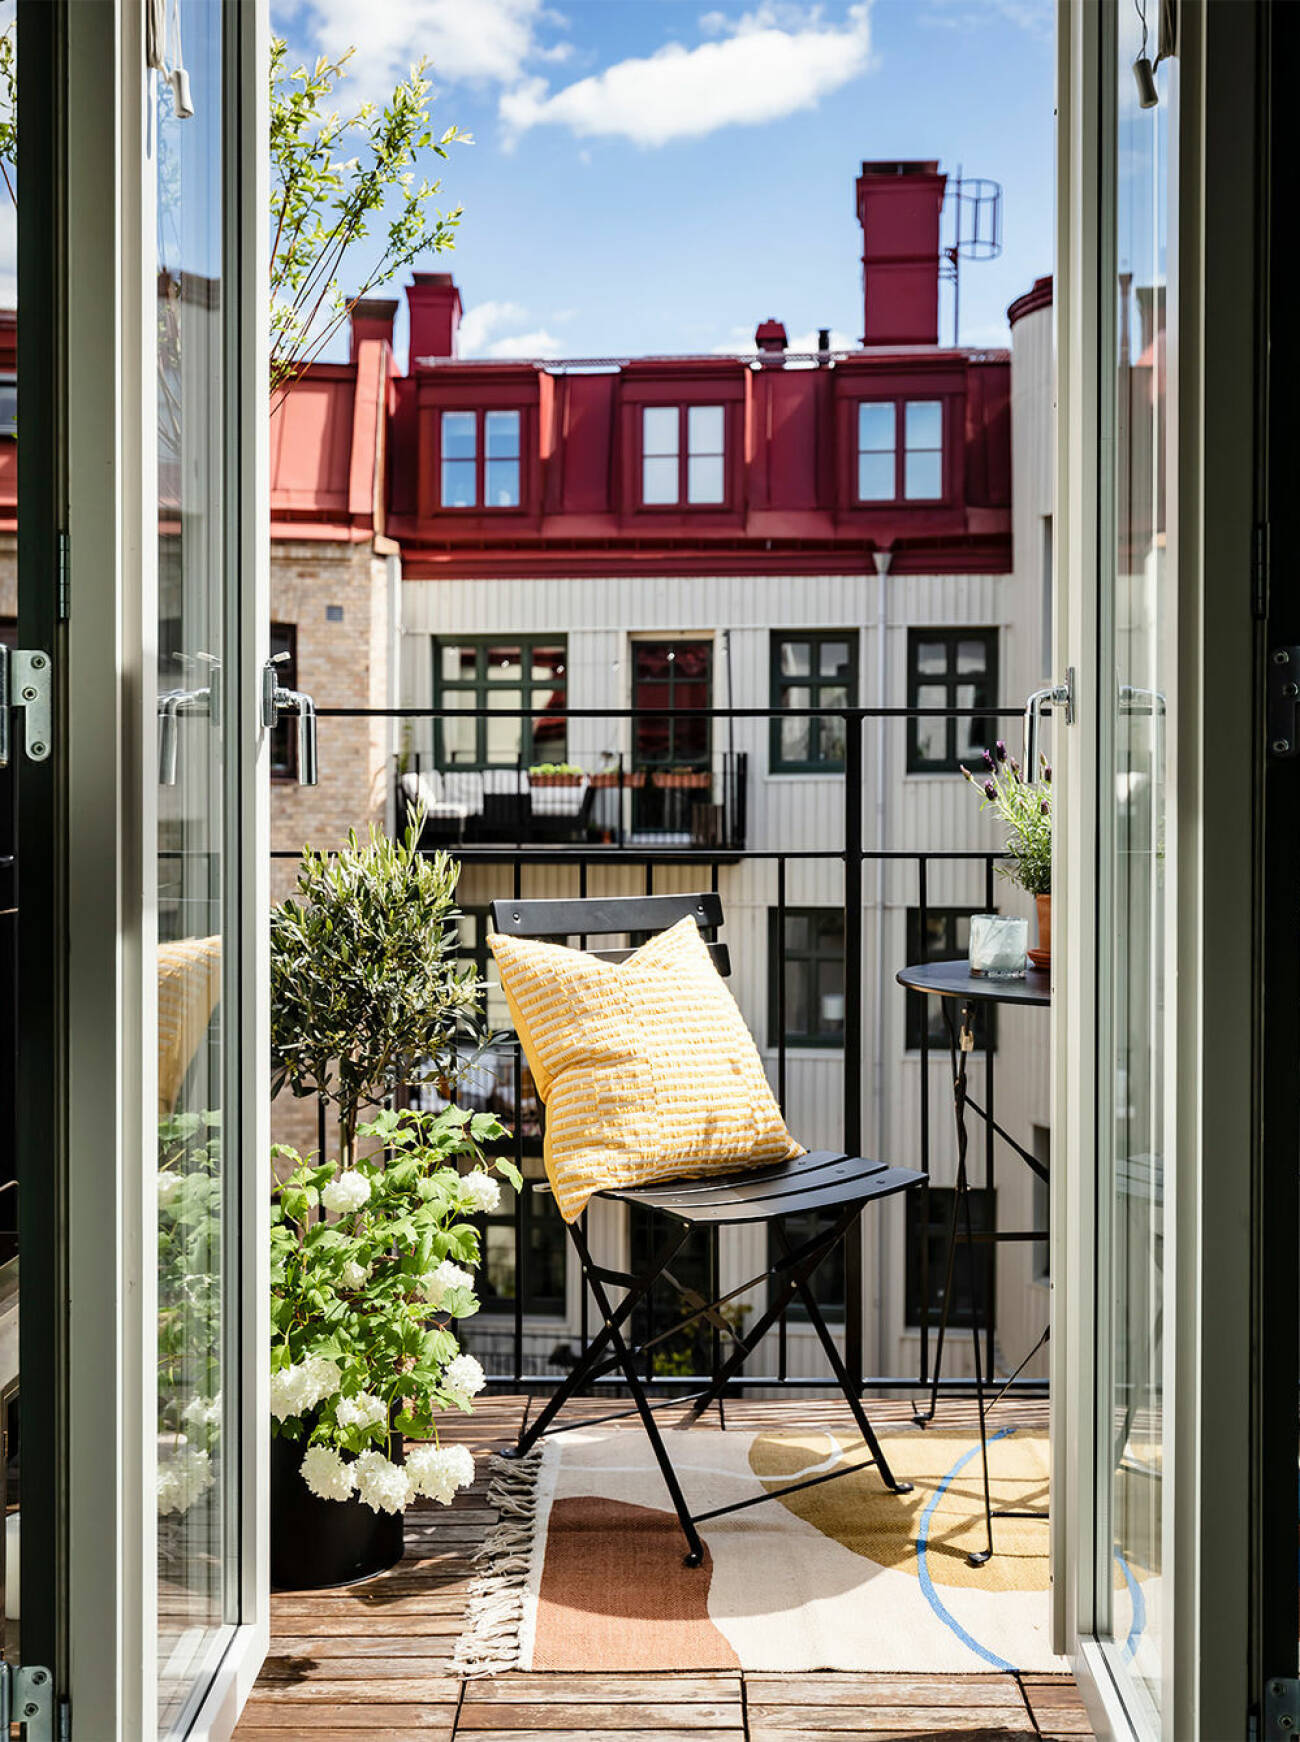 Mysig balkong i Göteborg med textilier och växter